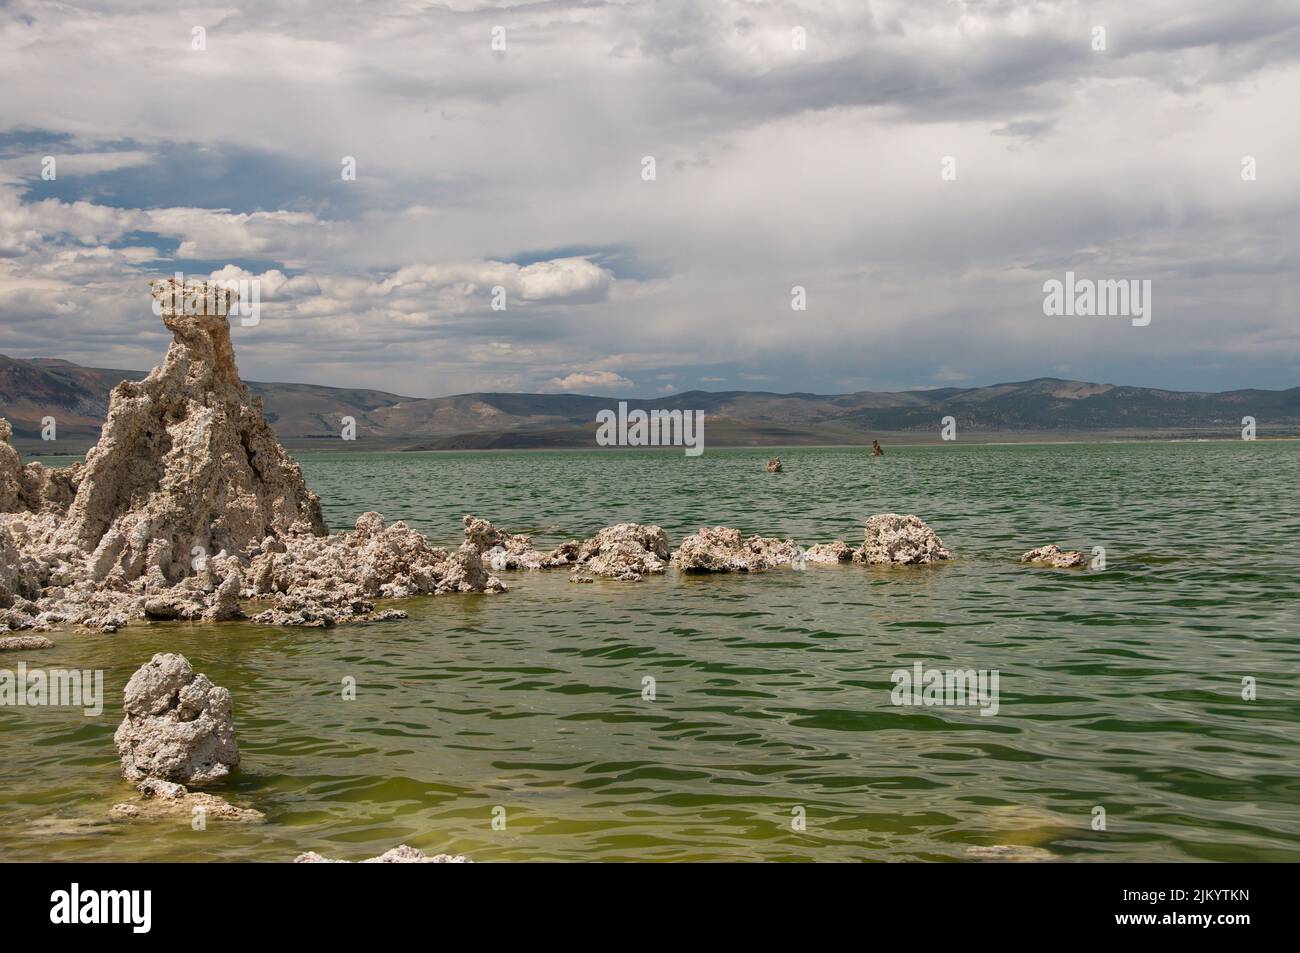 Una vista panoramica della struttura rocciosa del Lago Mono, un lago di soda salina nella Contea di Mono, California Foto Stock